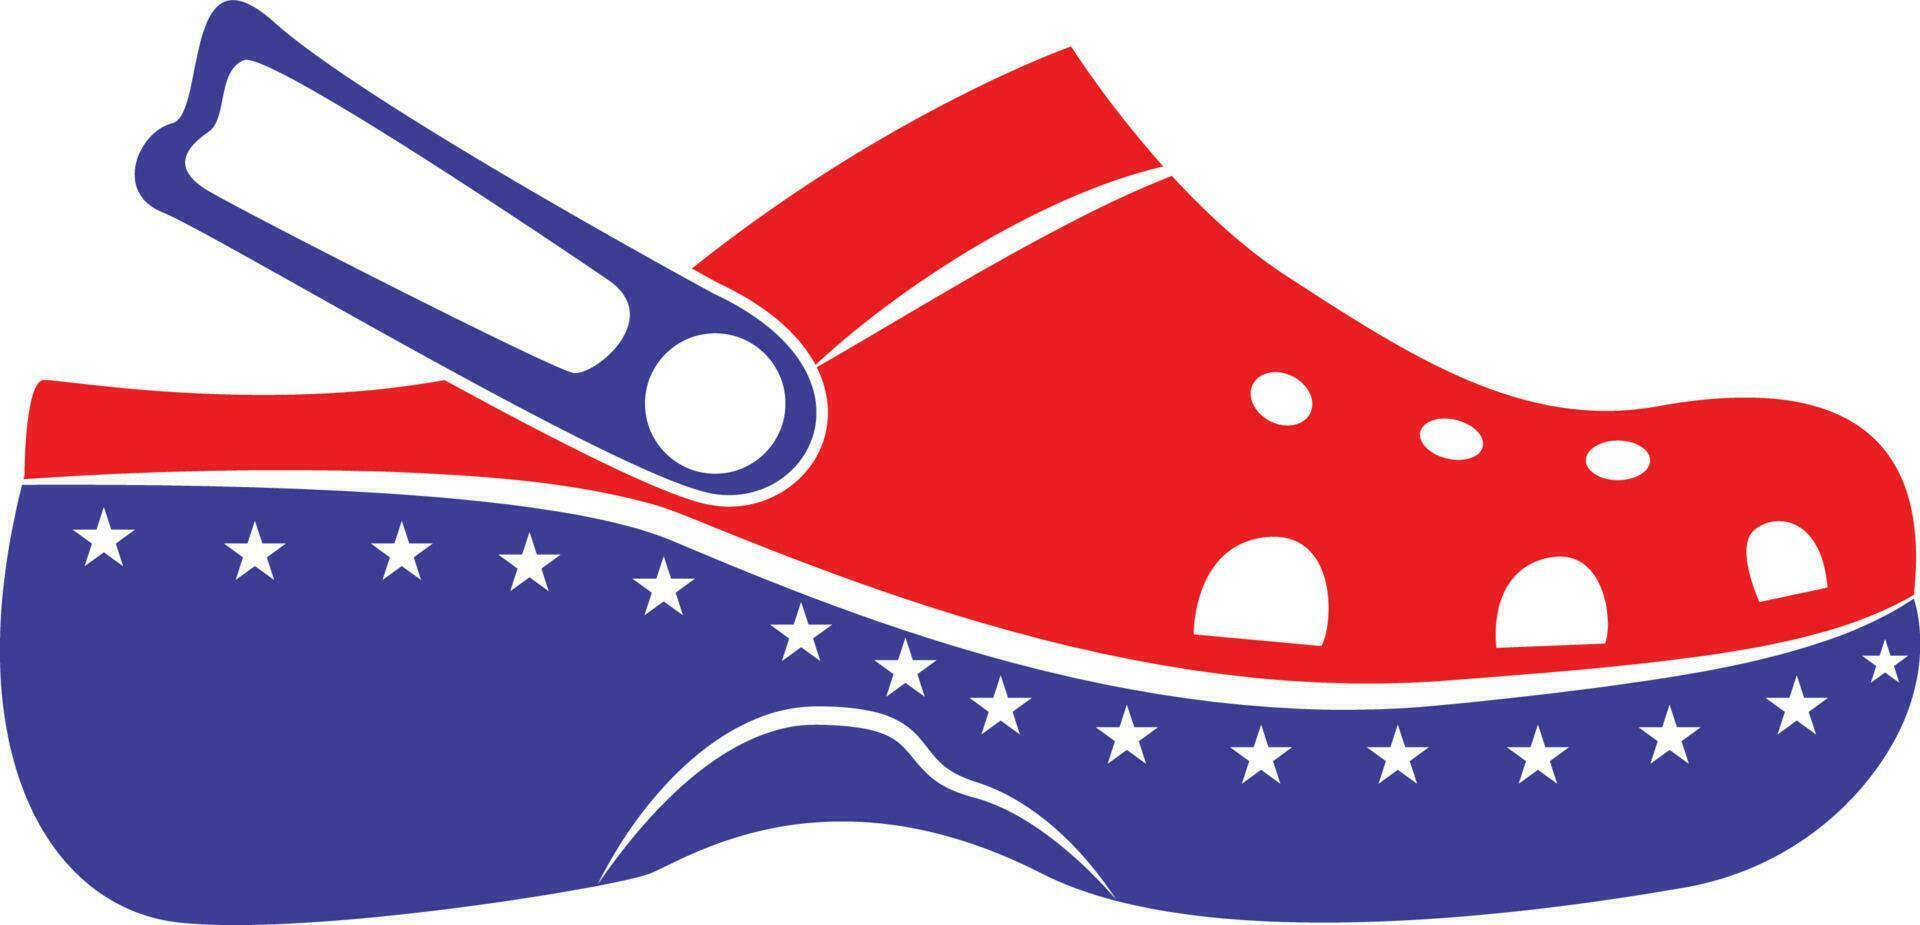 glida på sudd sandaler element 4:e oberoende dag flagga USA stil vektor